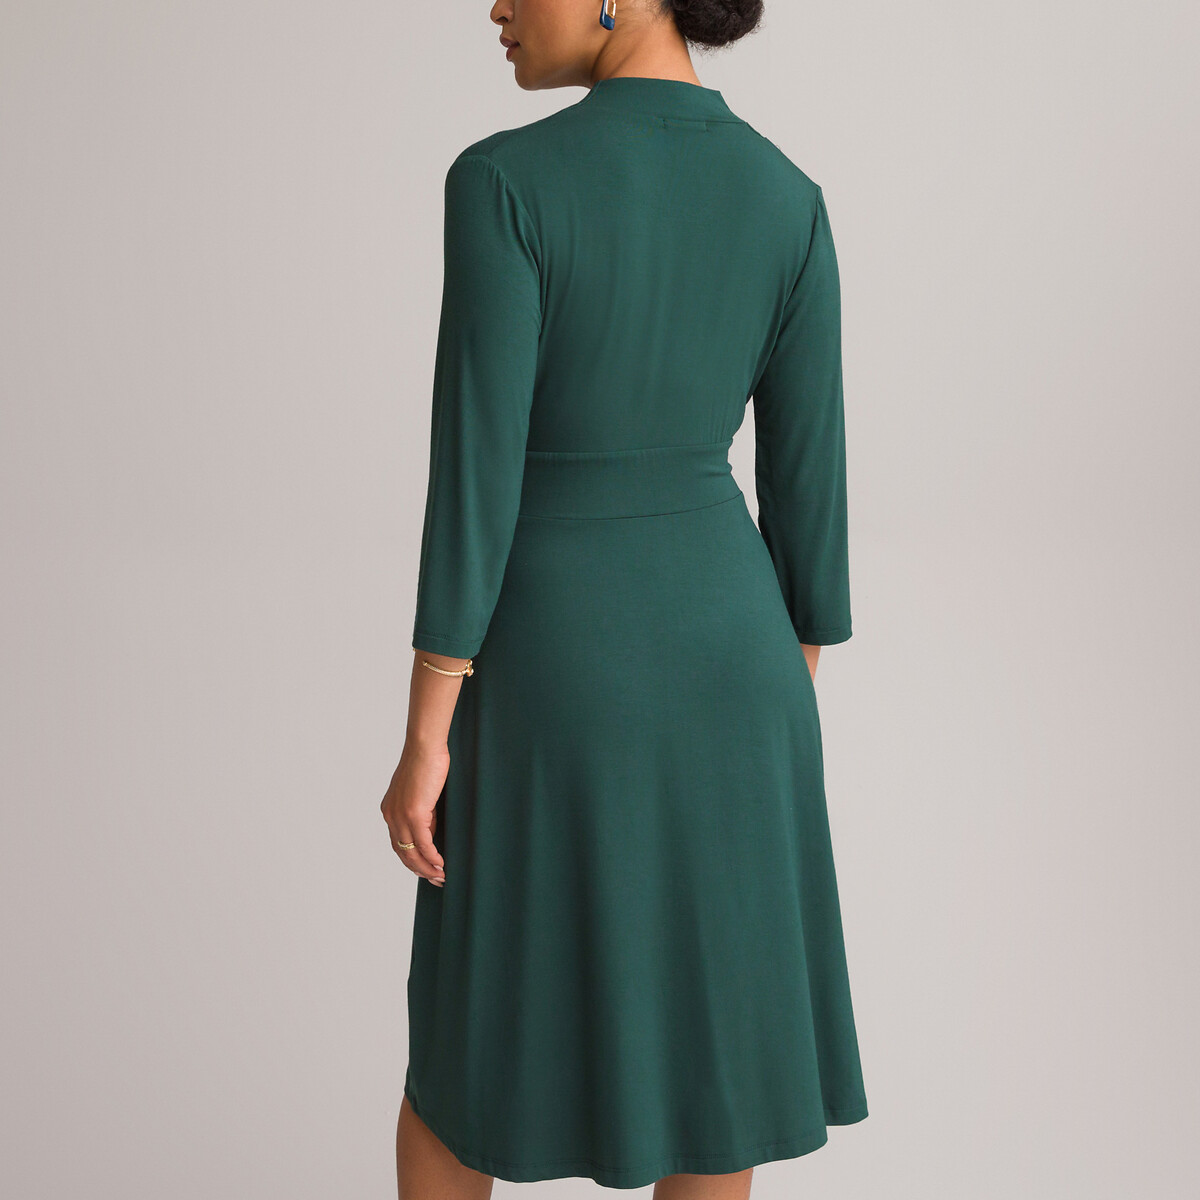 Платье ANNE WEYBURN Платье Расклешенное из струящегося трикотажа с рукавами 34 50 зеленый, размер 50 - фото 4